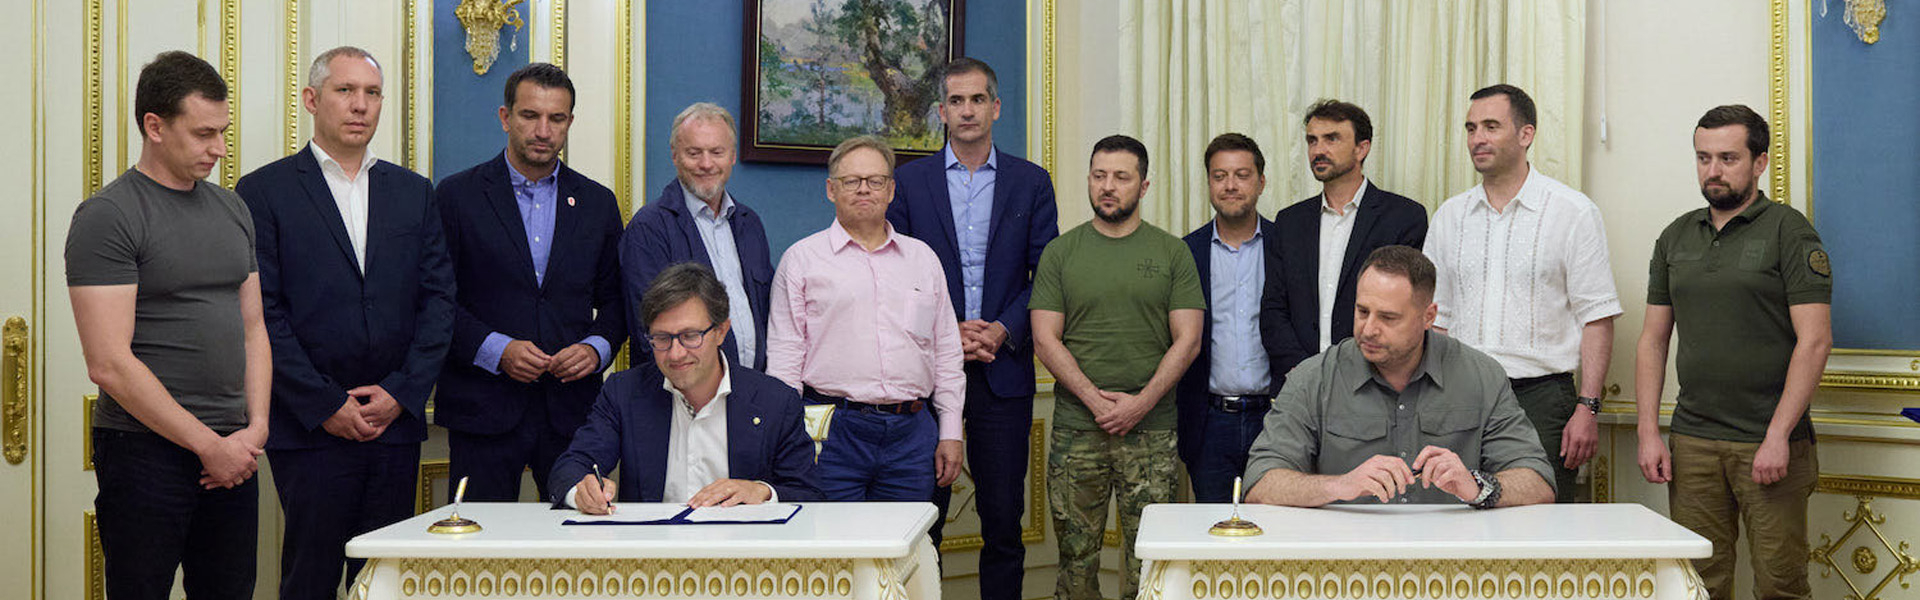 Signature d'un protocole d'accord pour la reconstruction durable des villes ukrainiennes 